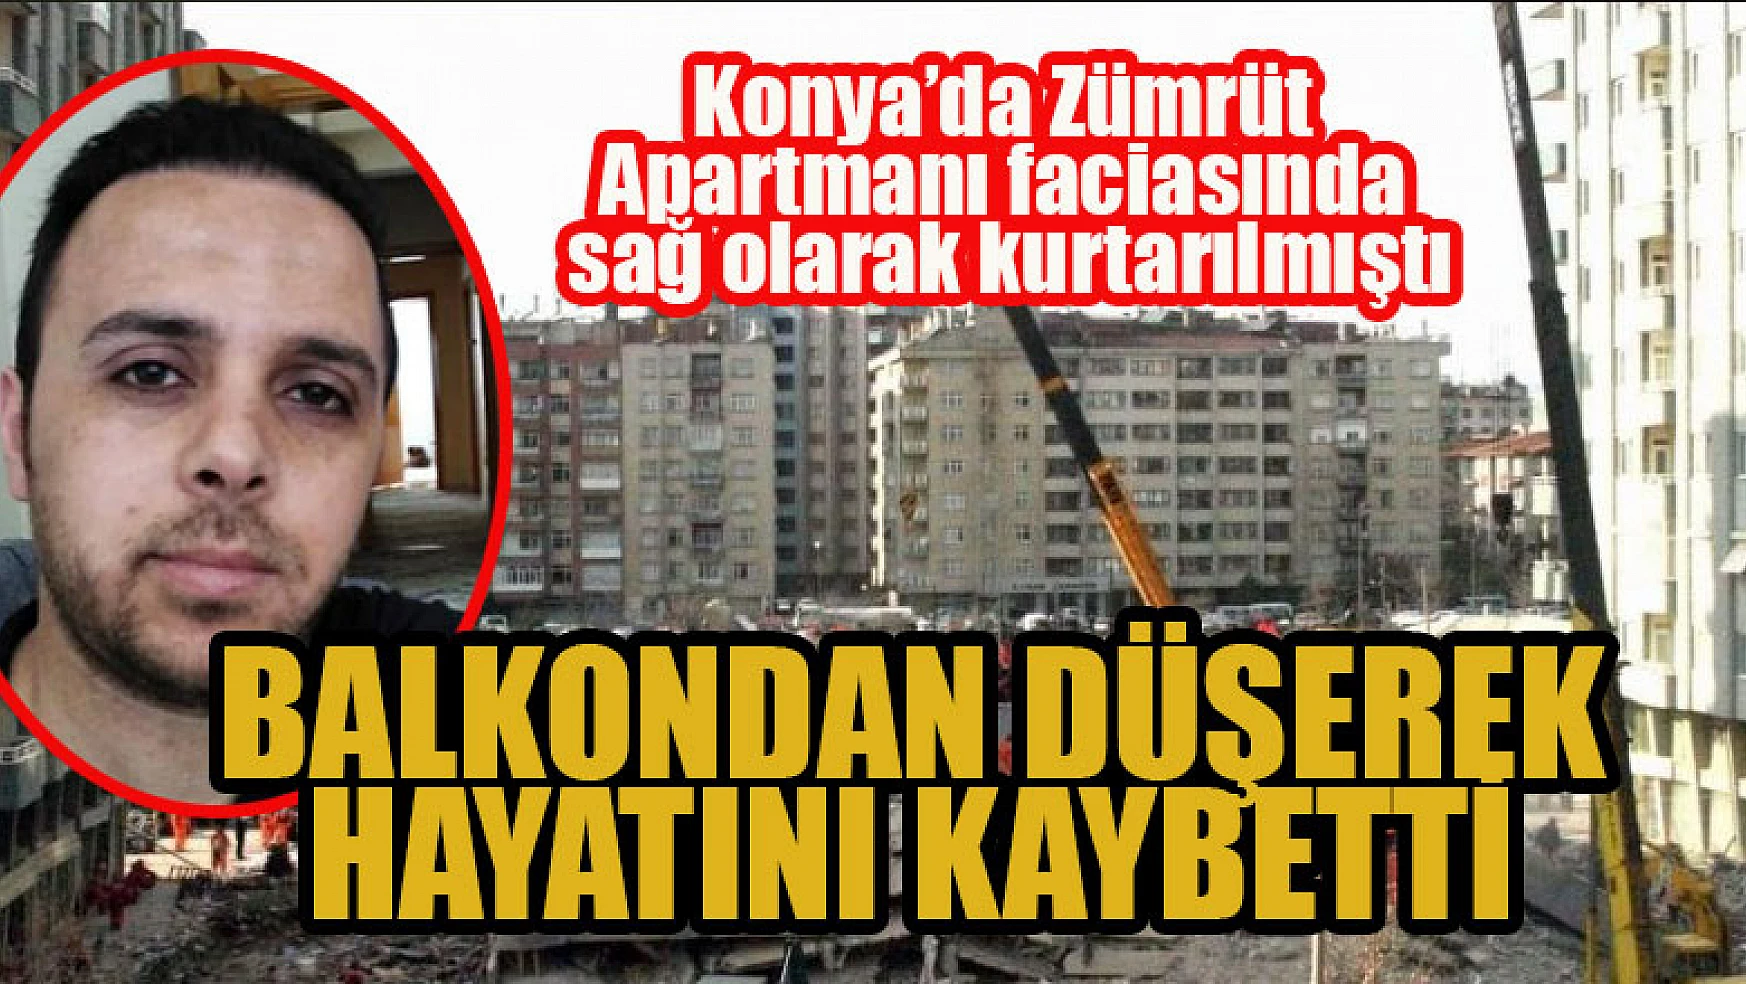 Konya'da Zümrüt Apartmanı faciasında 132 saat sonra sağ olarak kurtarılmıştı, balkondan düşerek hayatını kaybetti